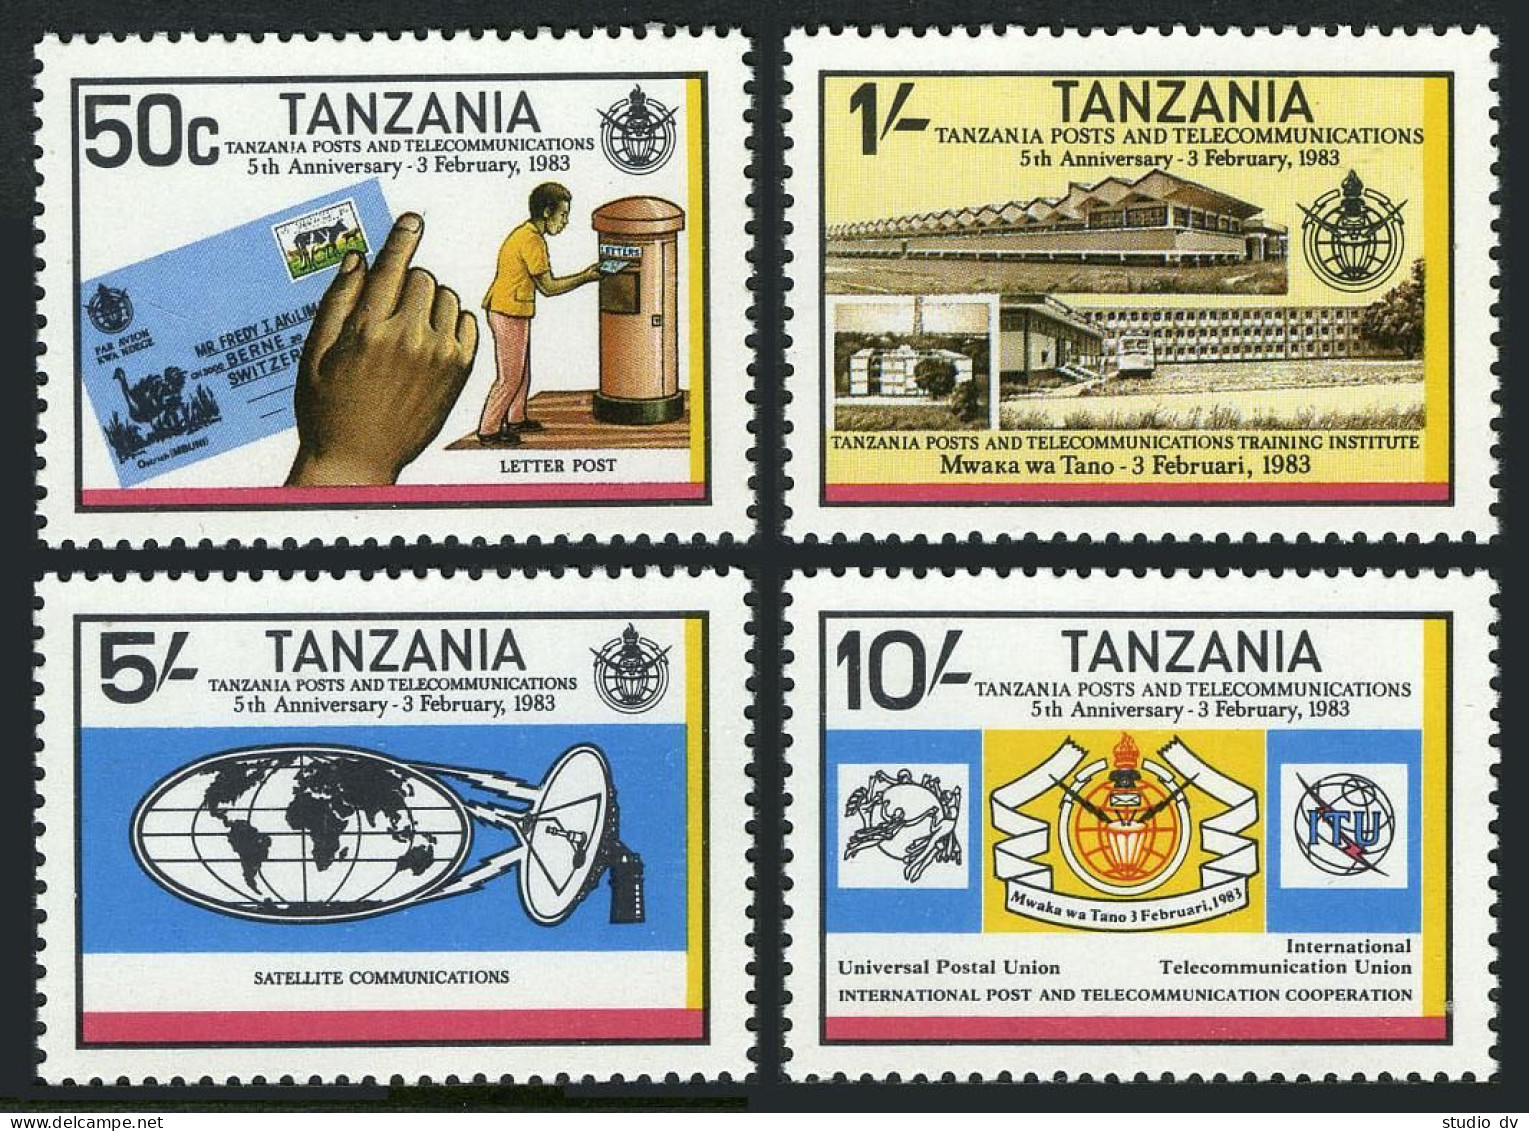 Tanzania 221-224,MNH.Michel 217-220. Post & Telecommunications Department,1983. - Tansania (1964-...)